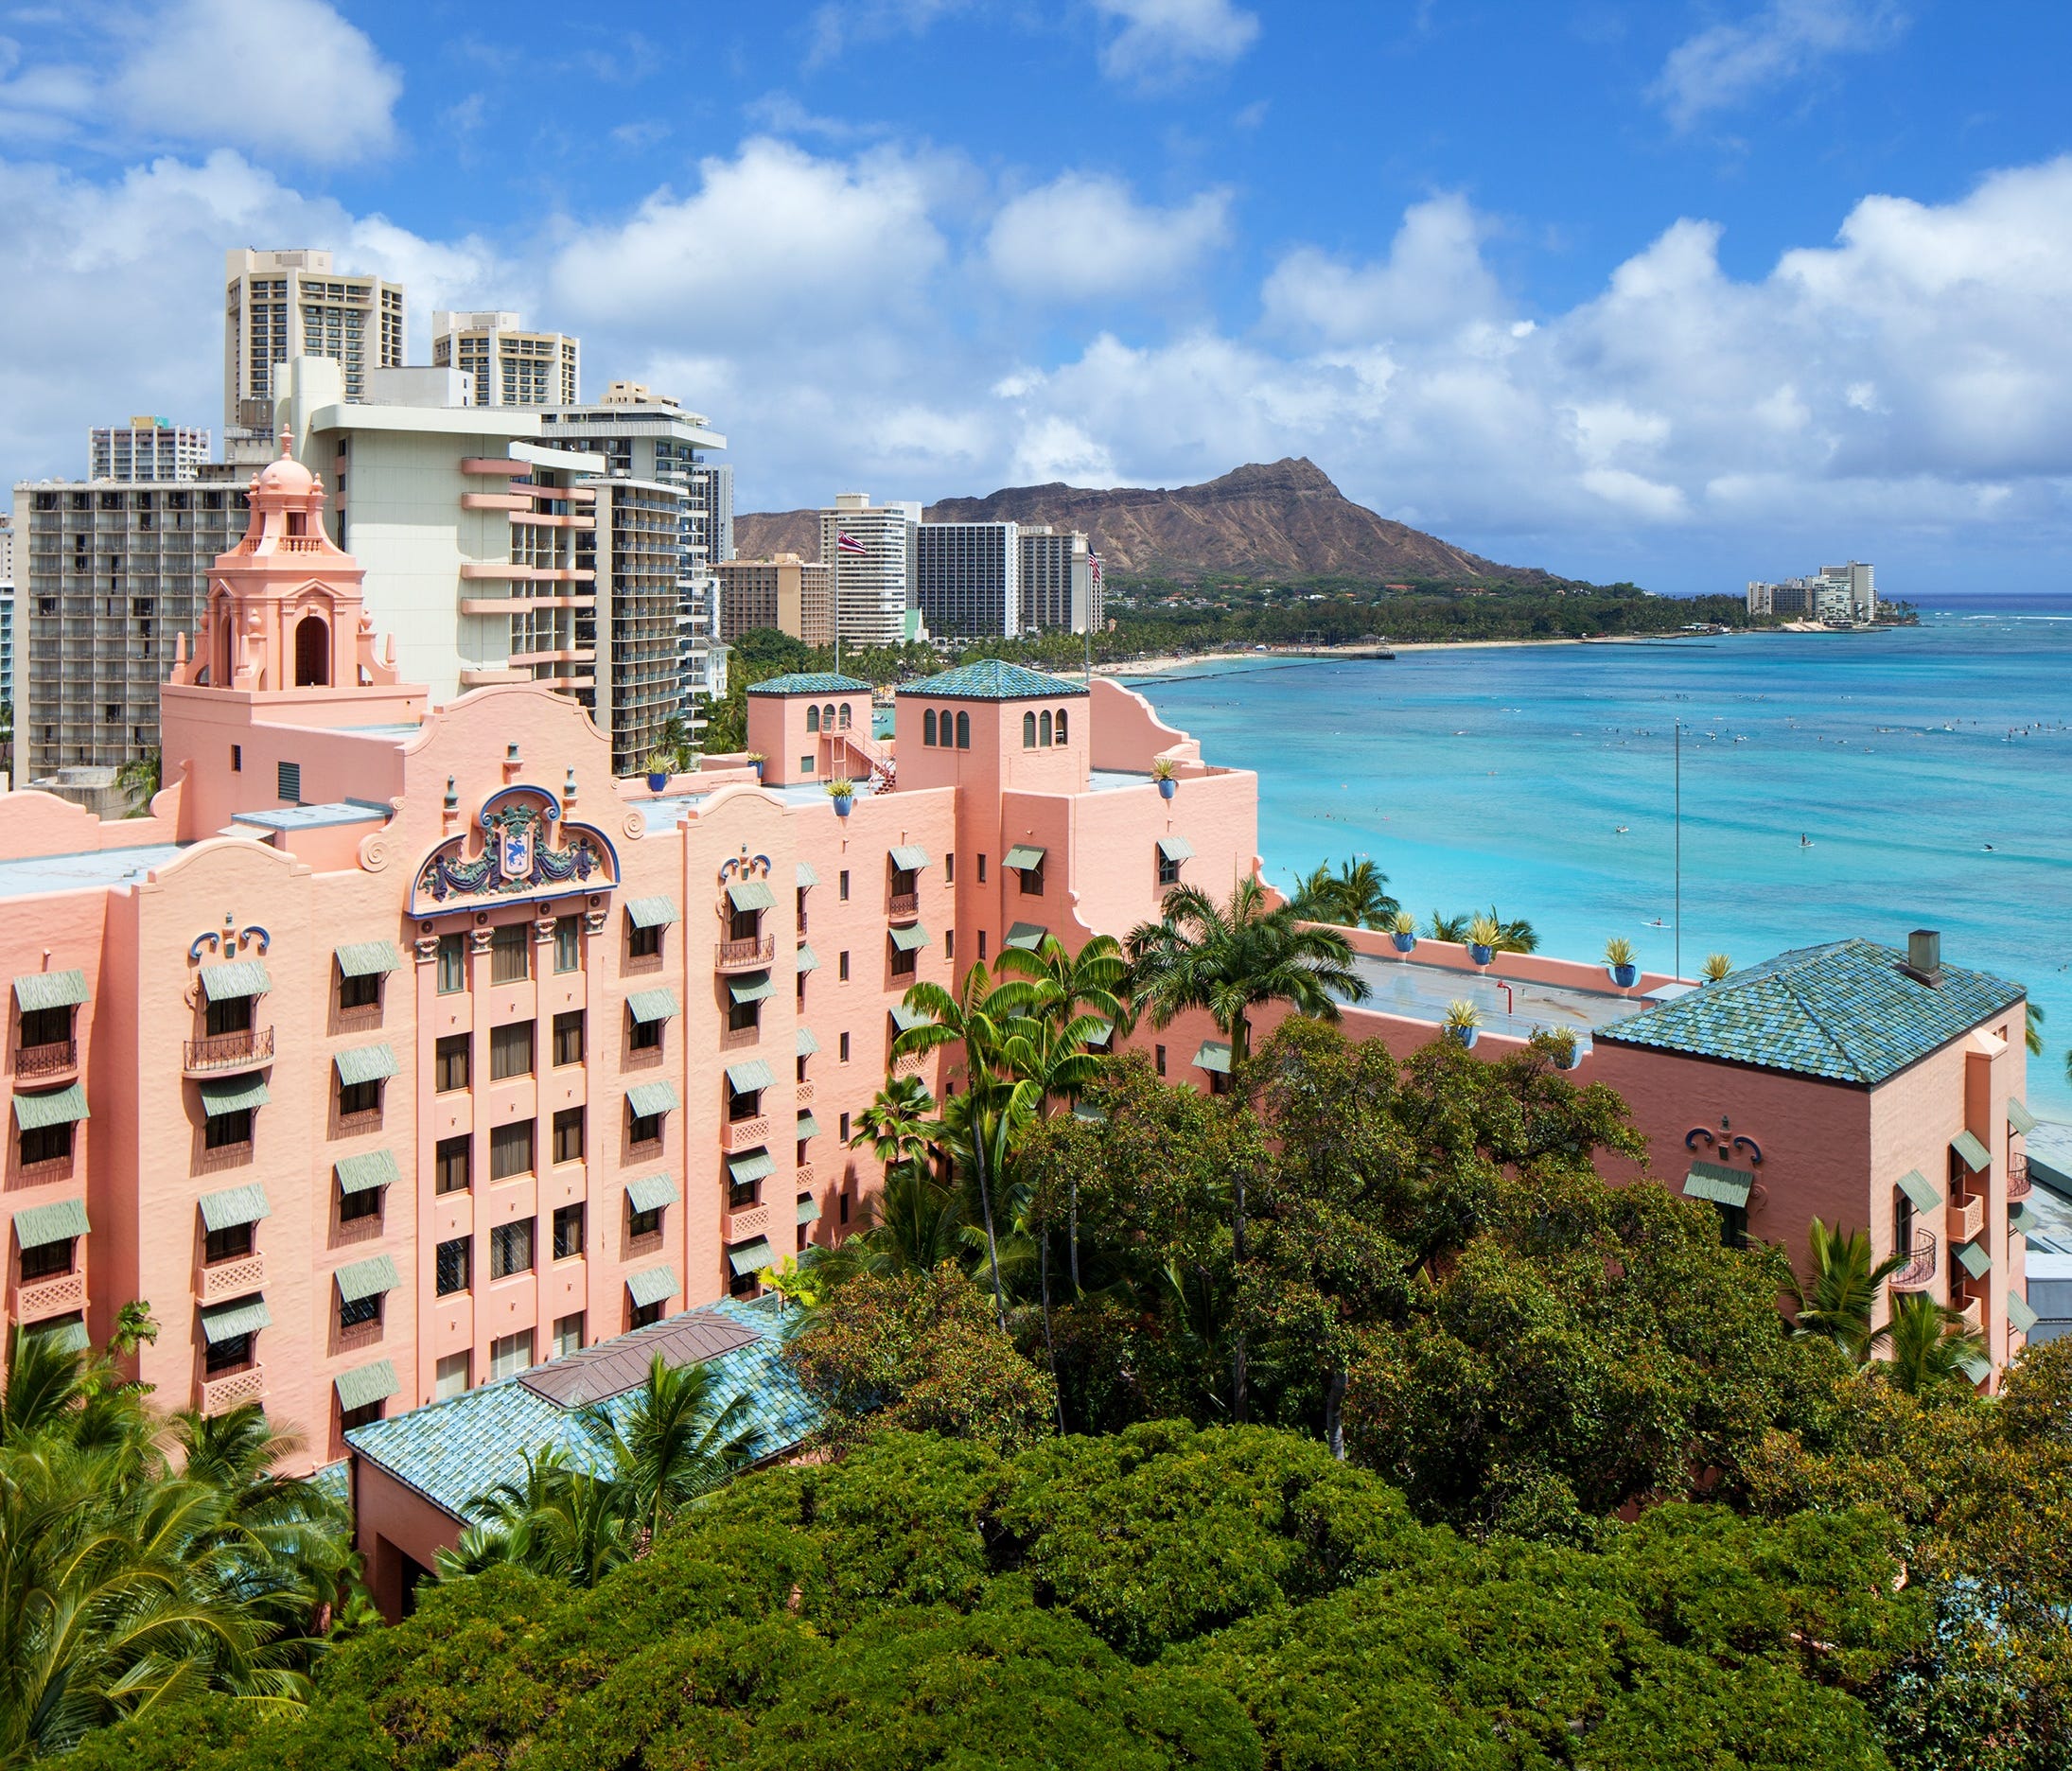 The historic Royal Hawaiian sits on Waikiki Beach on the Hawaiian island of Oahu.